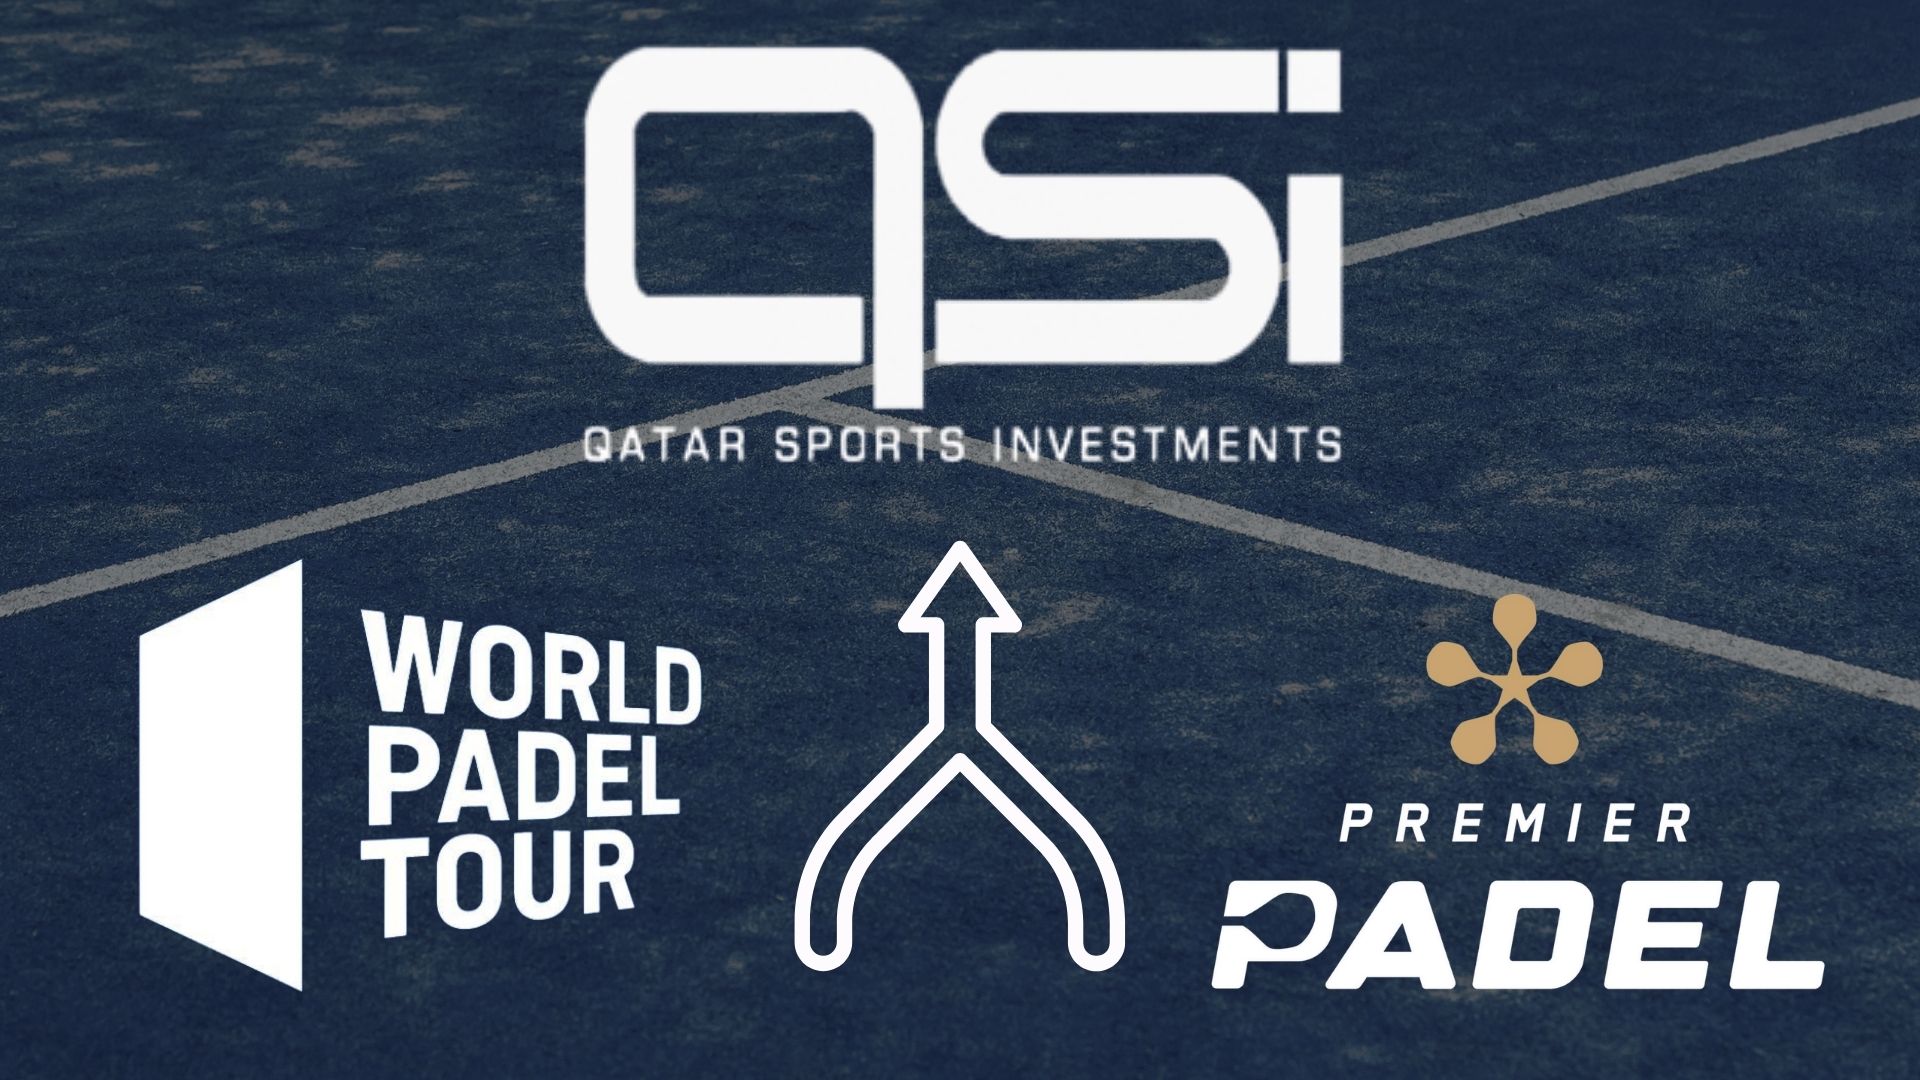 Le World Padel Tour dołączy Premier Padel od 2023 w QSI